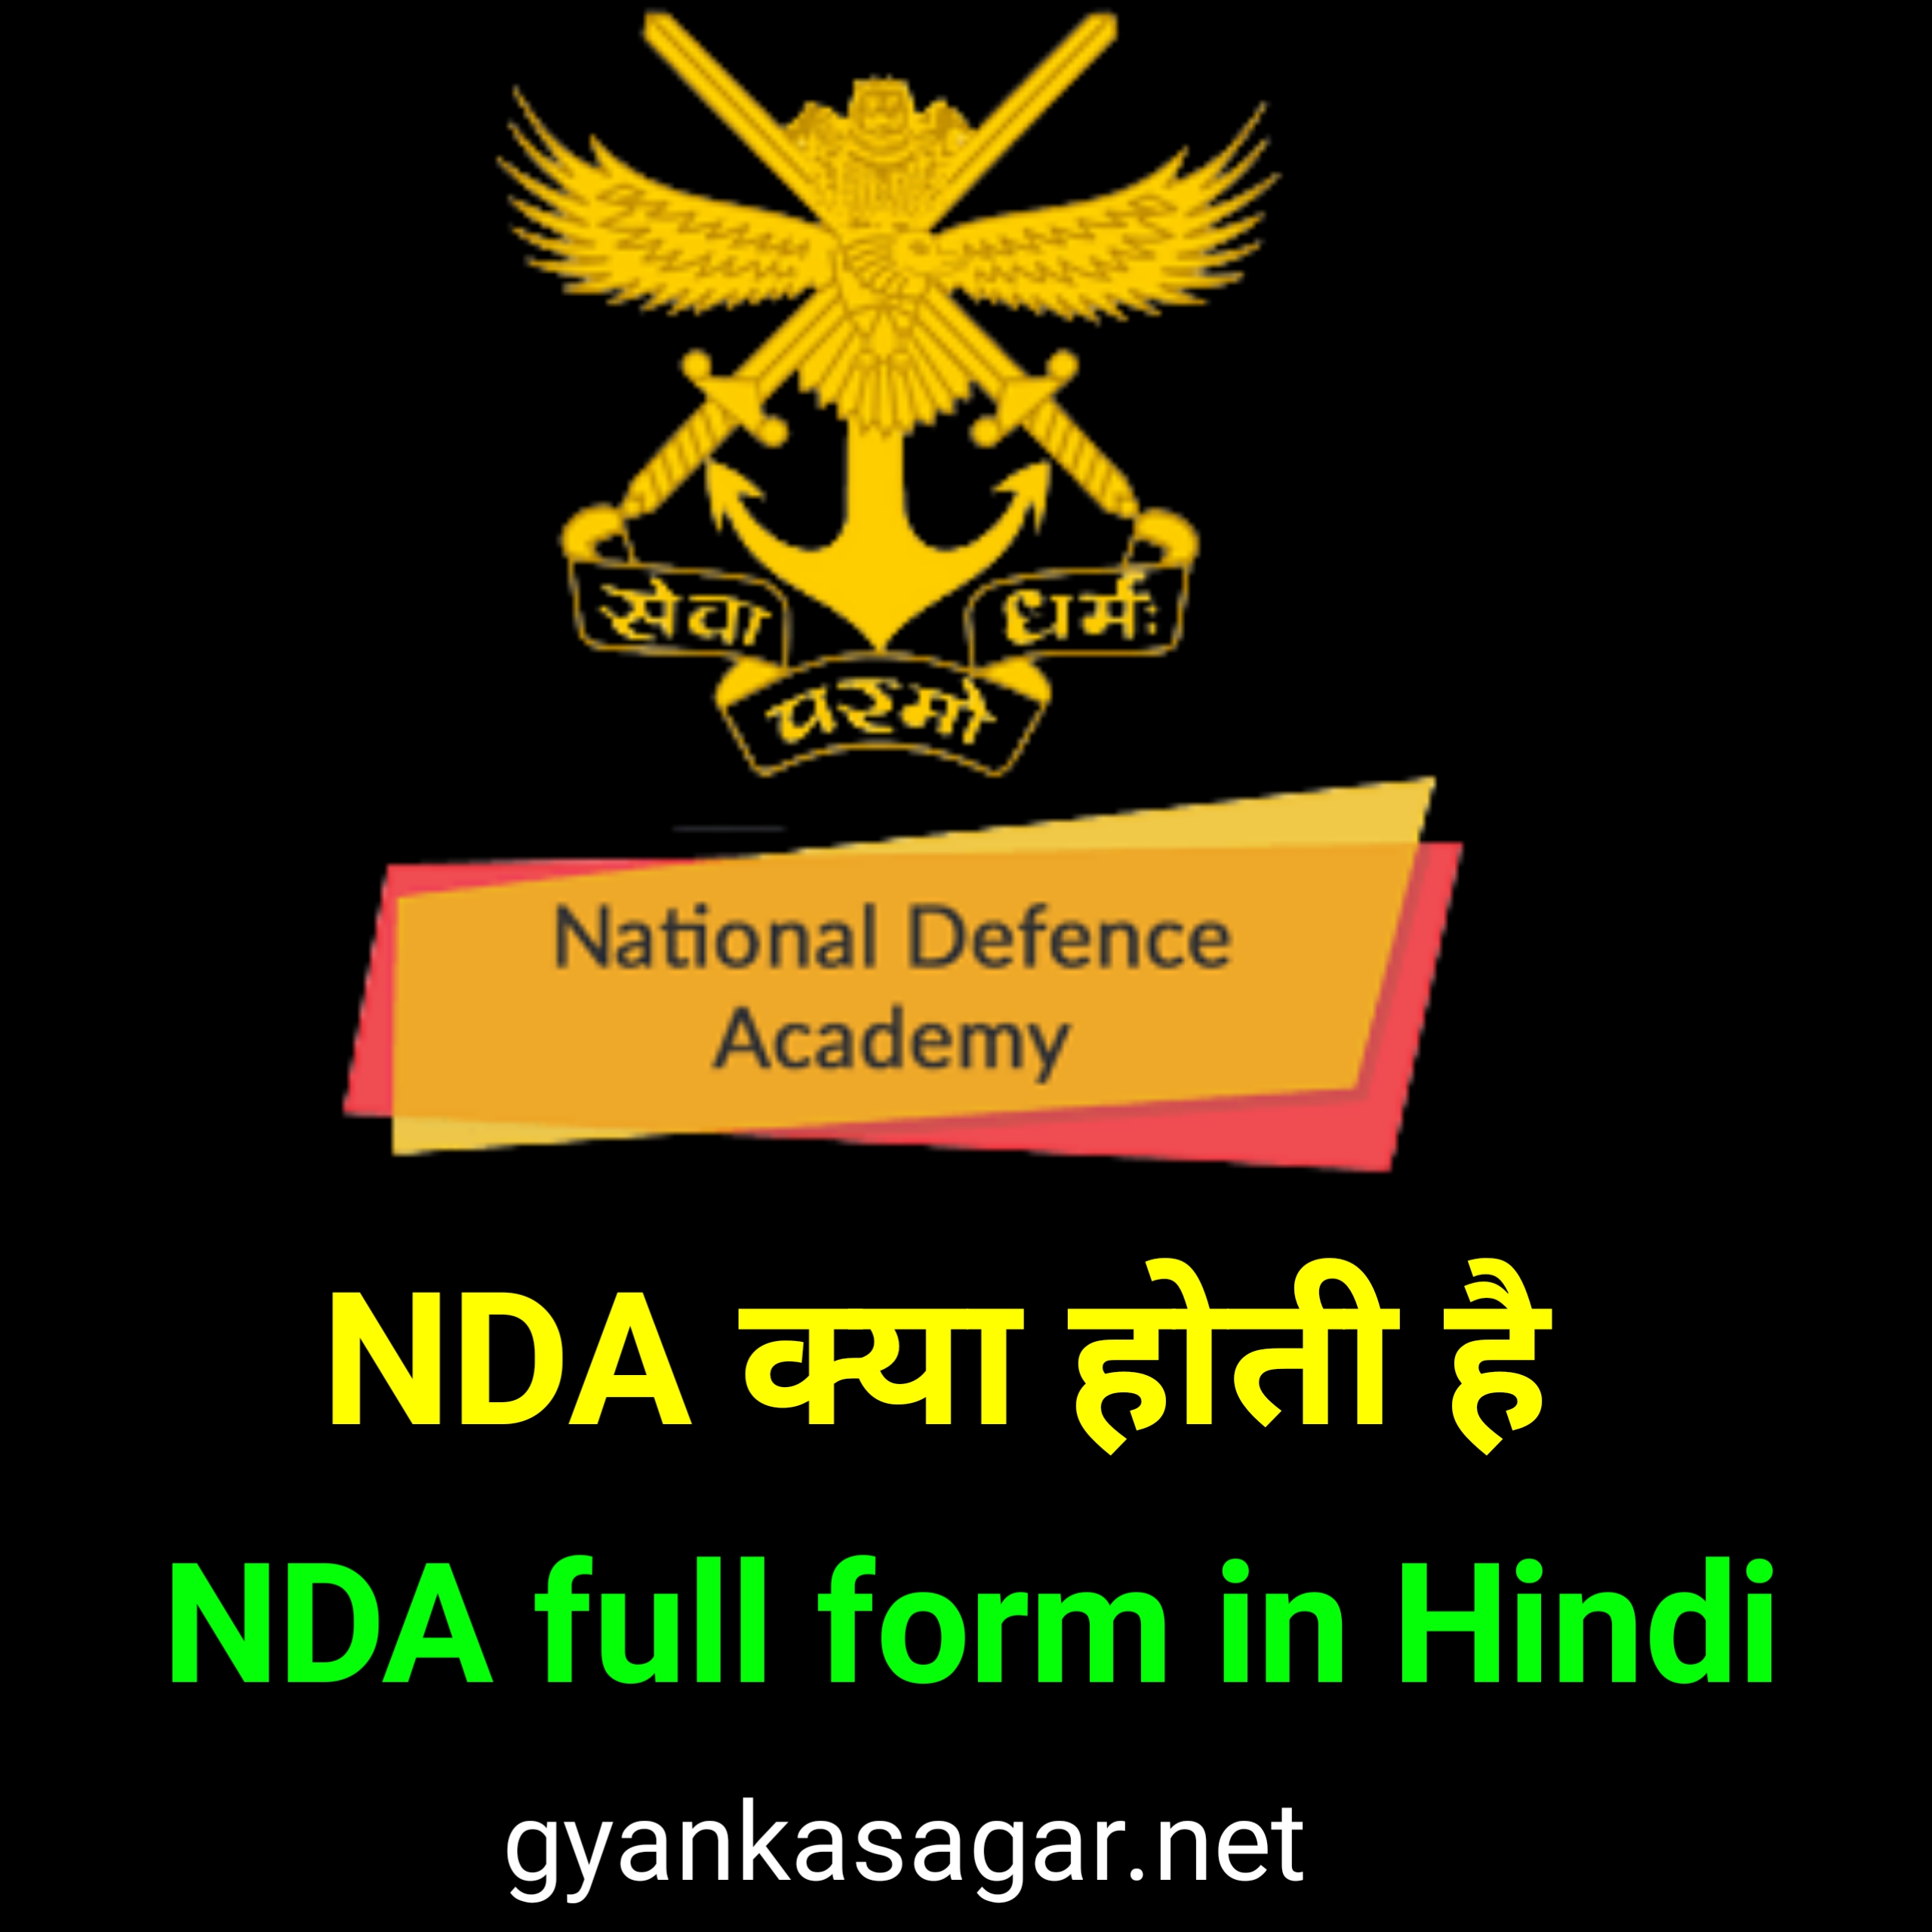 NDA full form in Hindi | NDA क्या होती हैं,एनडीए ज्वाइन कैसे करें पूरी जानकारी हिंदी में 2022,NDA का फुल फॉर्म क्या होता है, एनडीए क्या होती है और इसके कार्य क्या है, NDA join kaise karen, NDA की फुल फॉर्म क्या होती है, एनडीए कैसे करें पूरी जानकारी हिंदी में